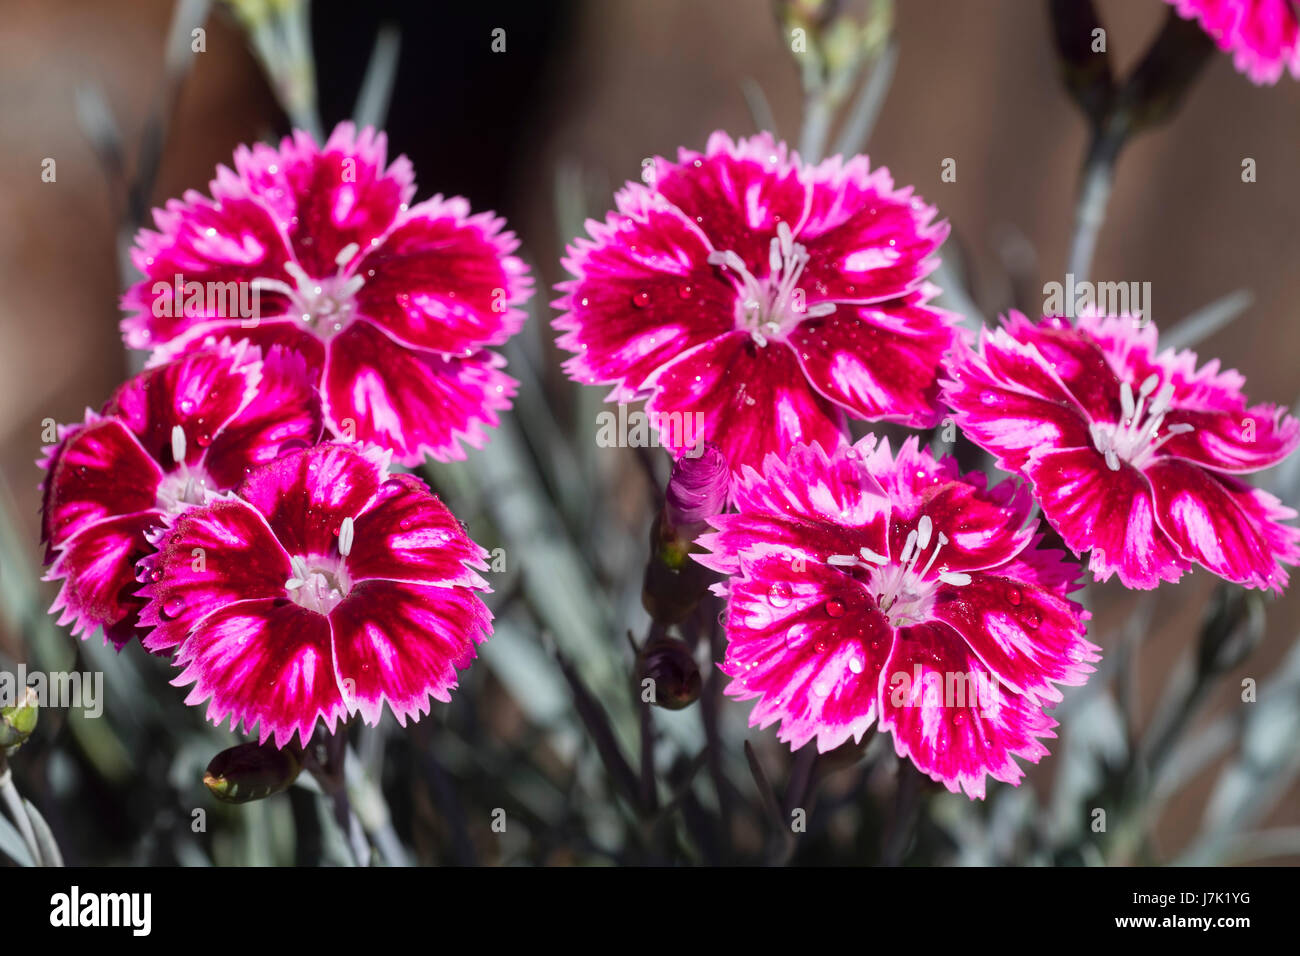 Leuchtend rote und rosa Blüten des kompakten Garten rosa, Dianthus "Supernova", eine lange blühende, duftende Vielfalt Stockfoto